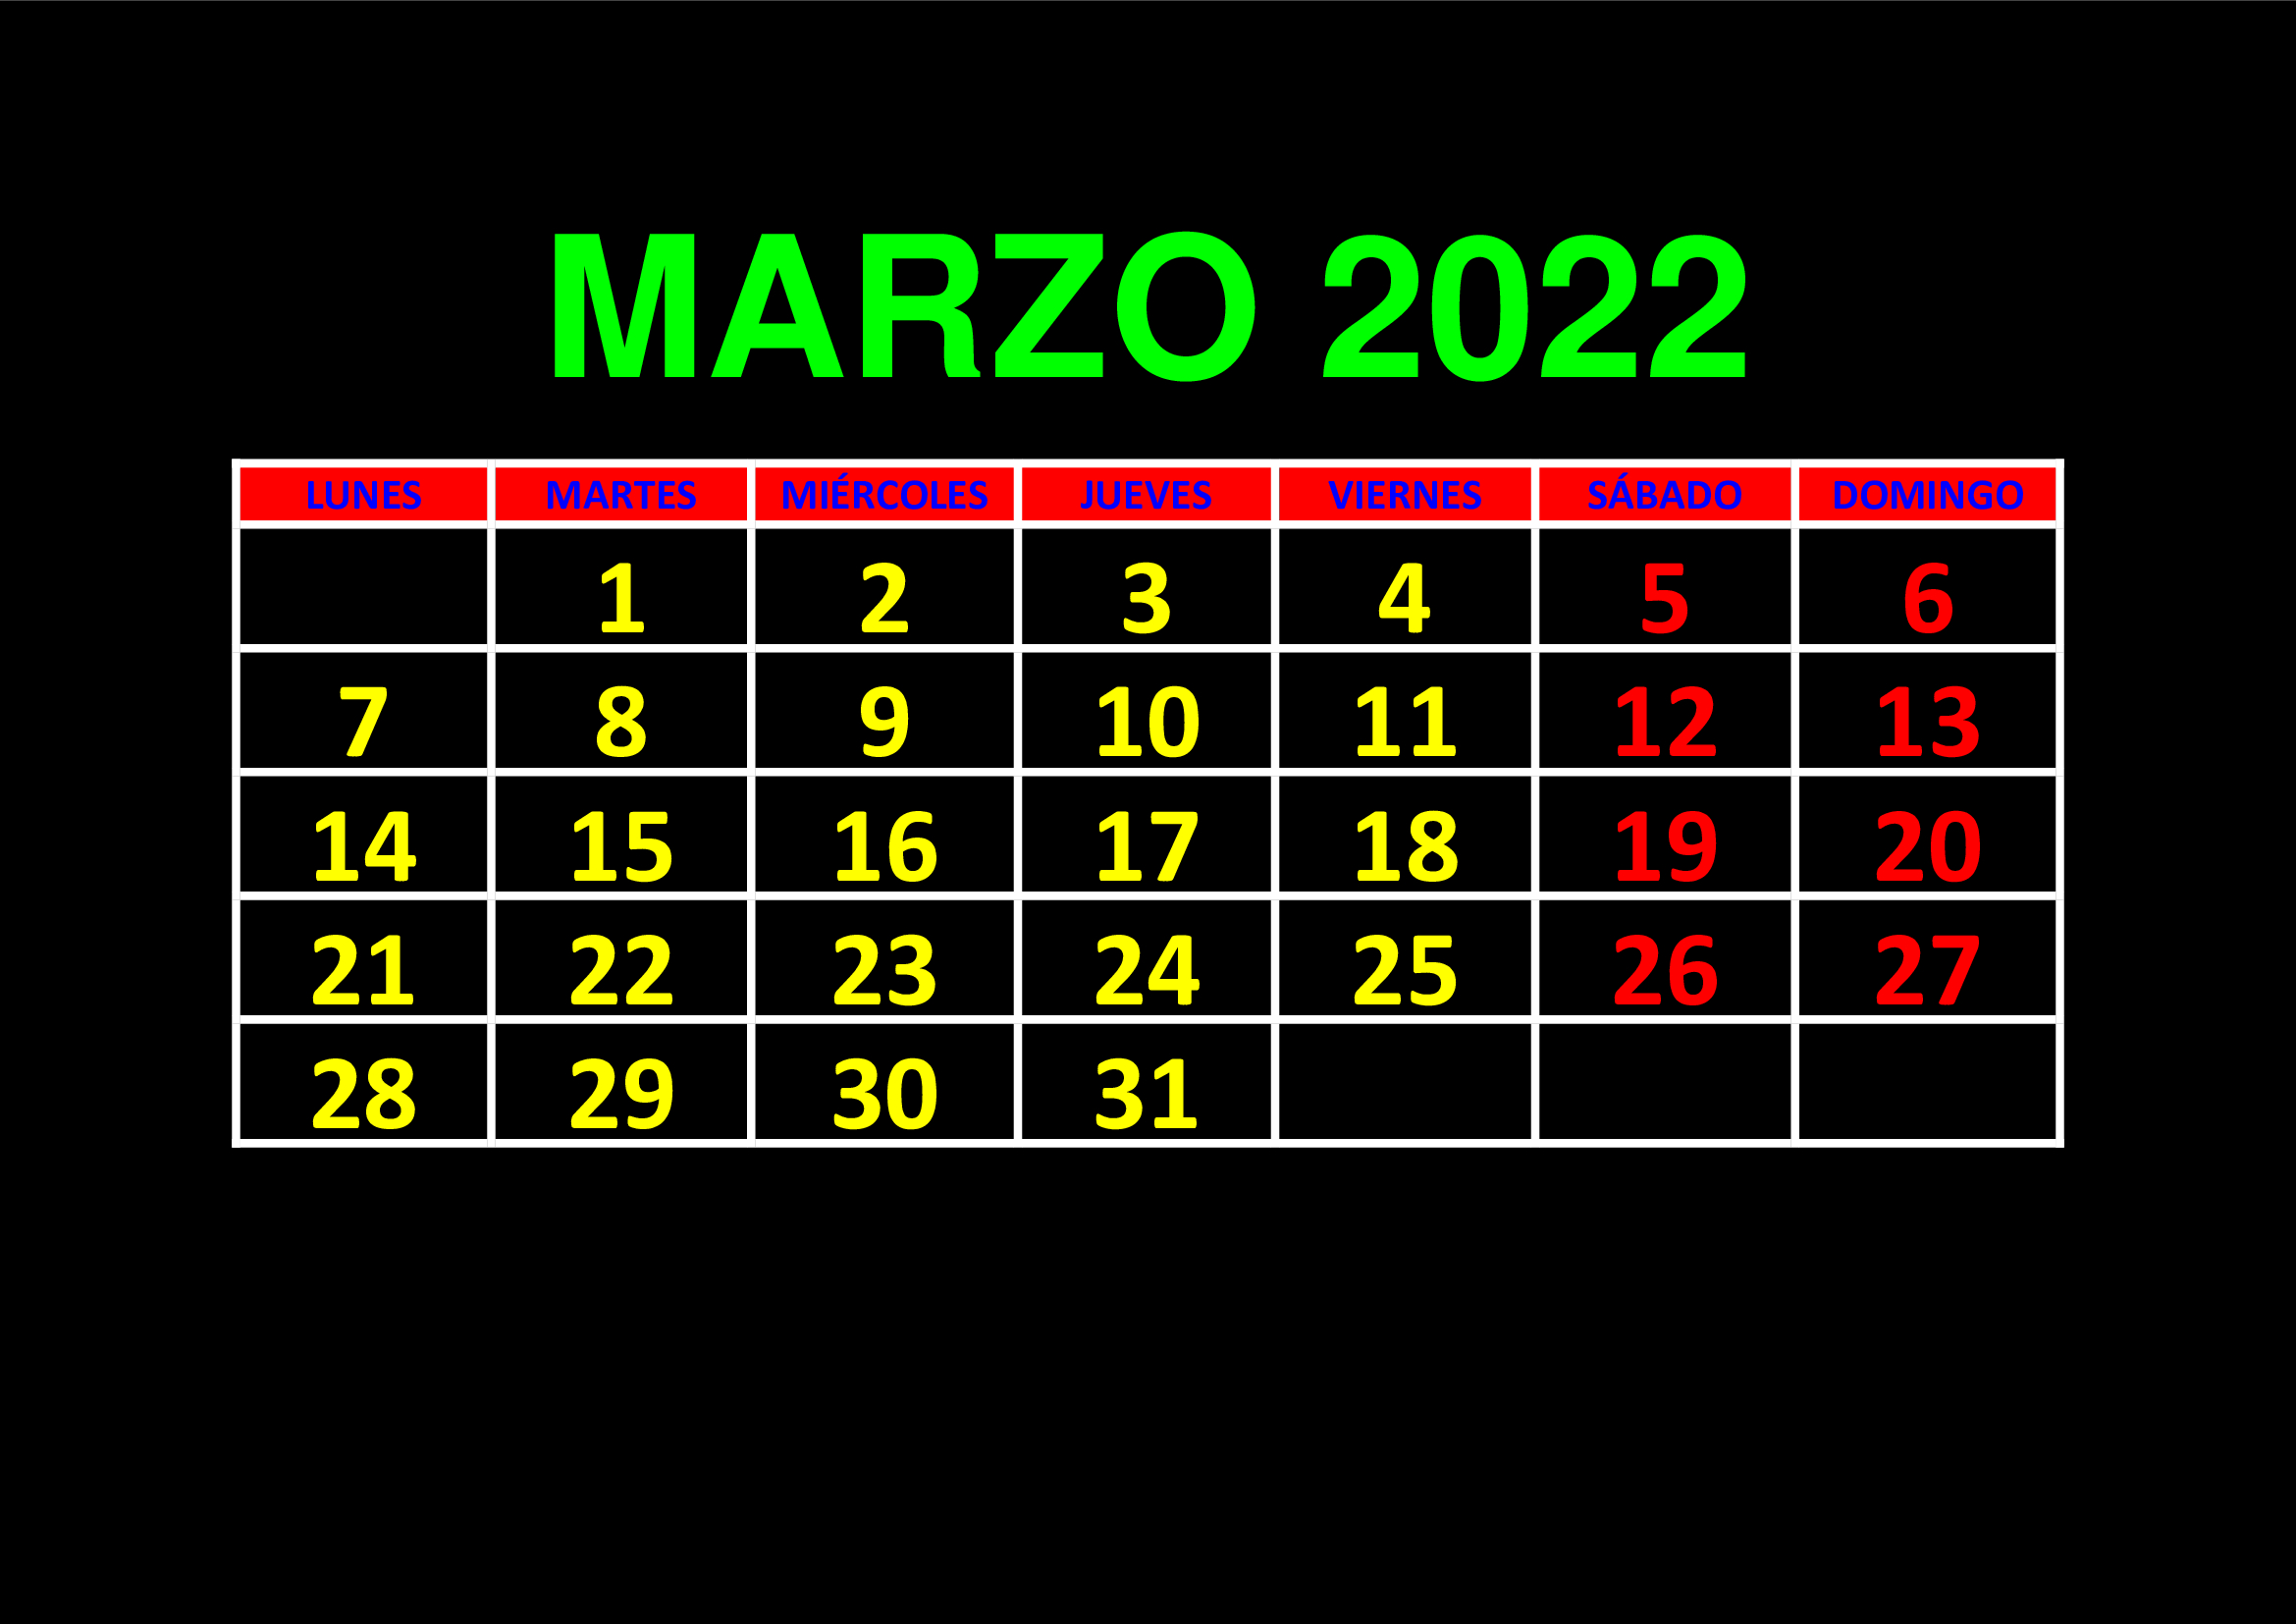 La imagen muestra el mes de marzo de 2022